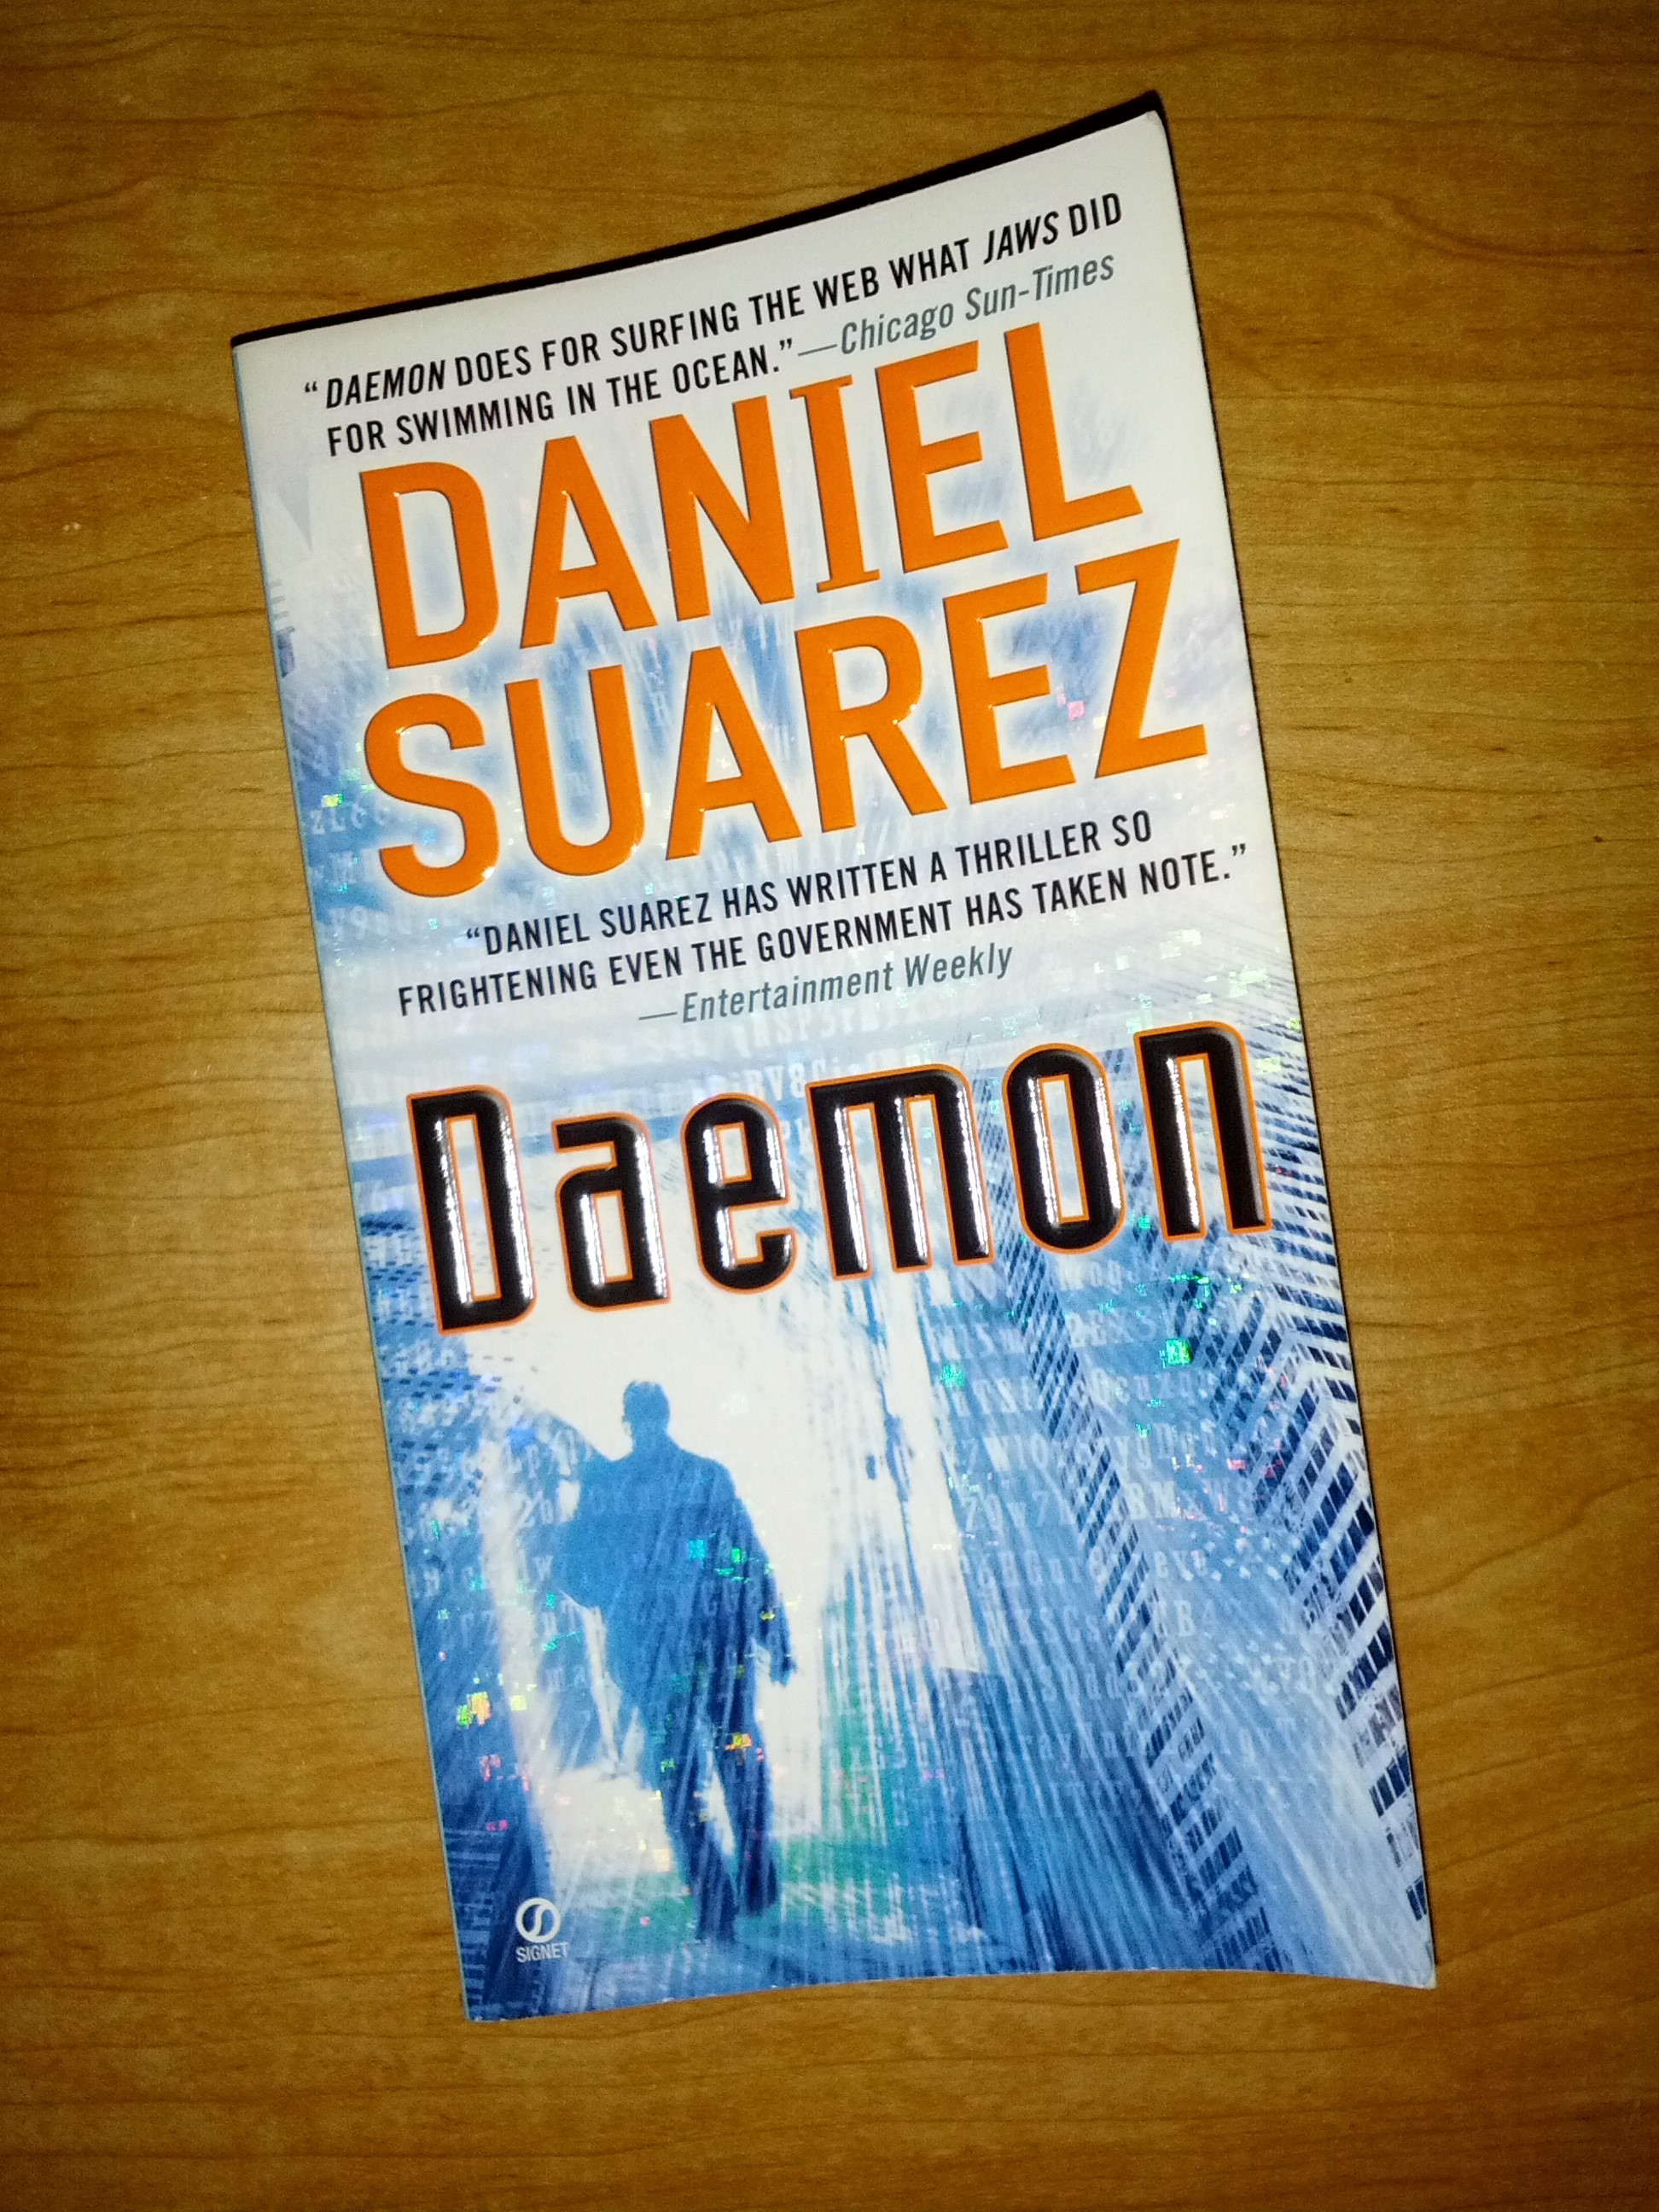 Daemon by Daniel Suarez